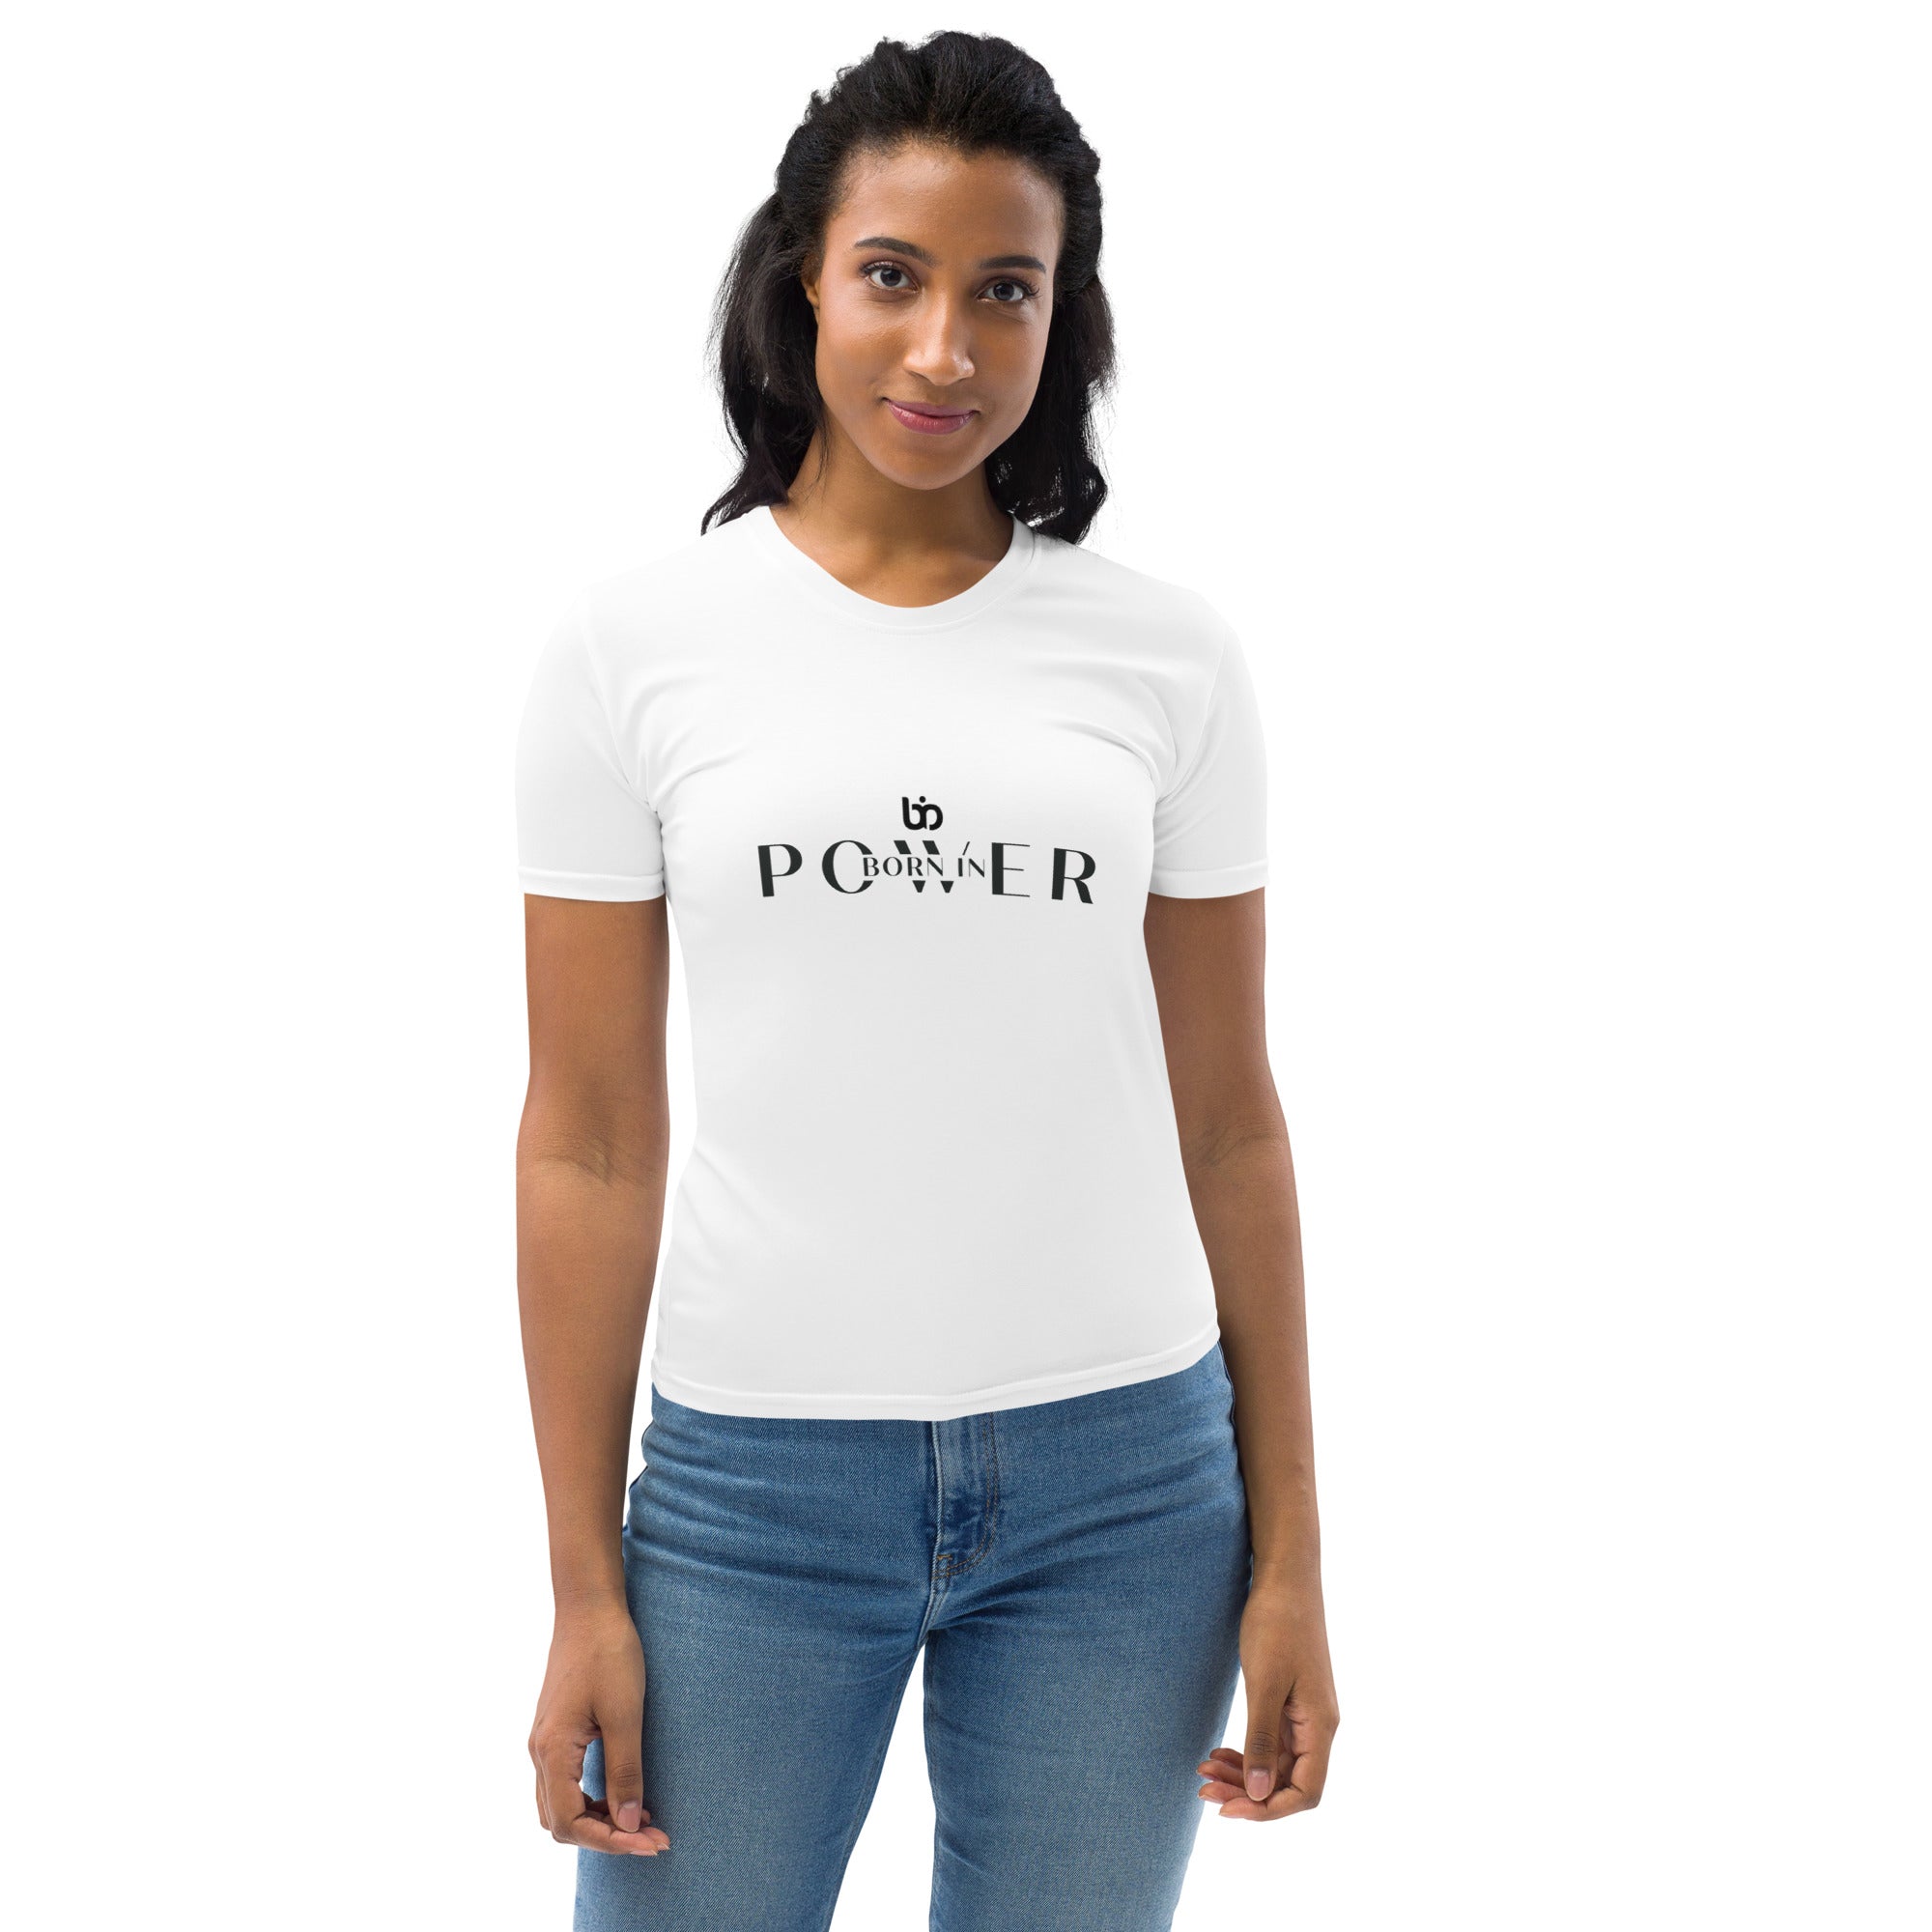 all-over-print-womens-crew-neck-t-shirt-white-front-6492198d3e354.jpg